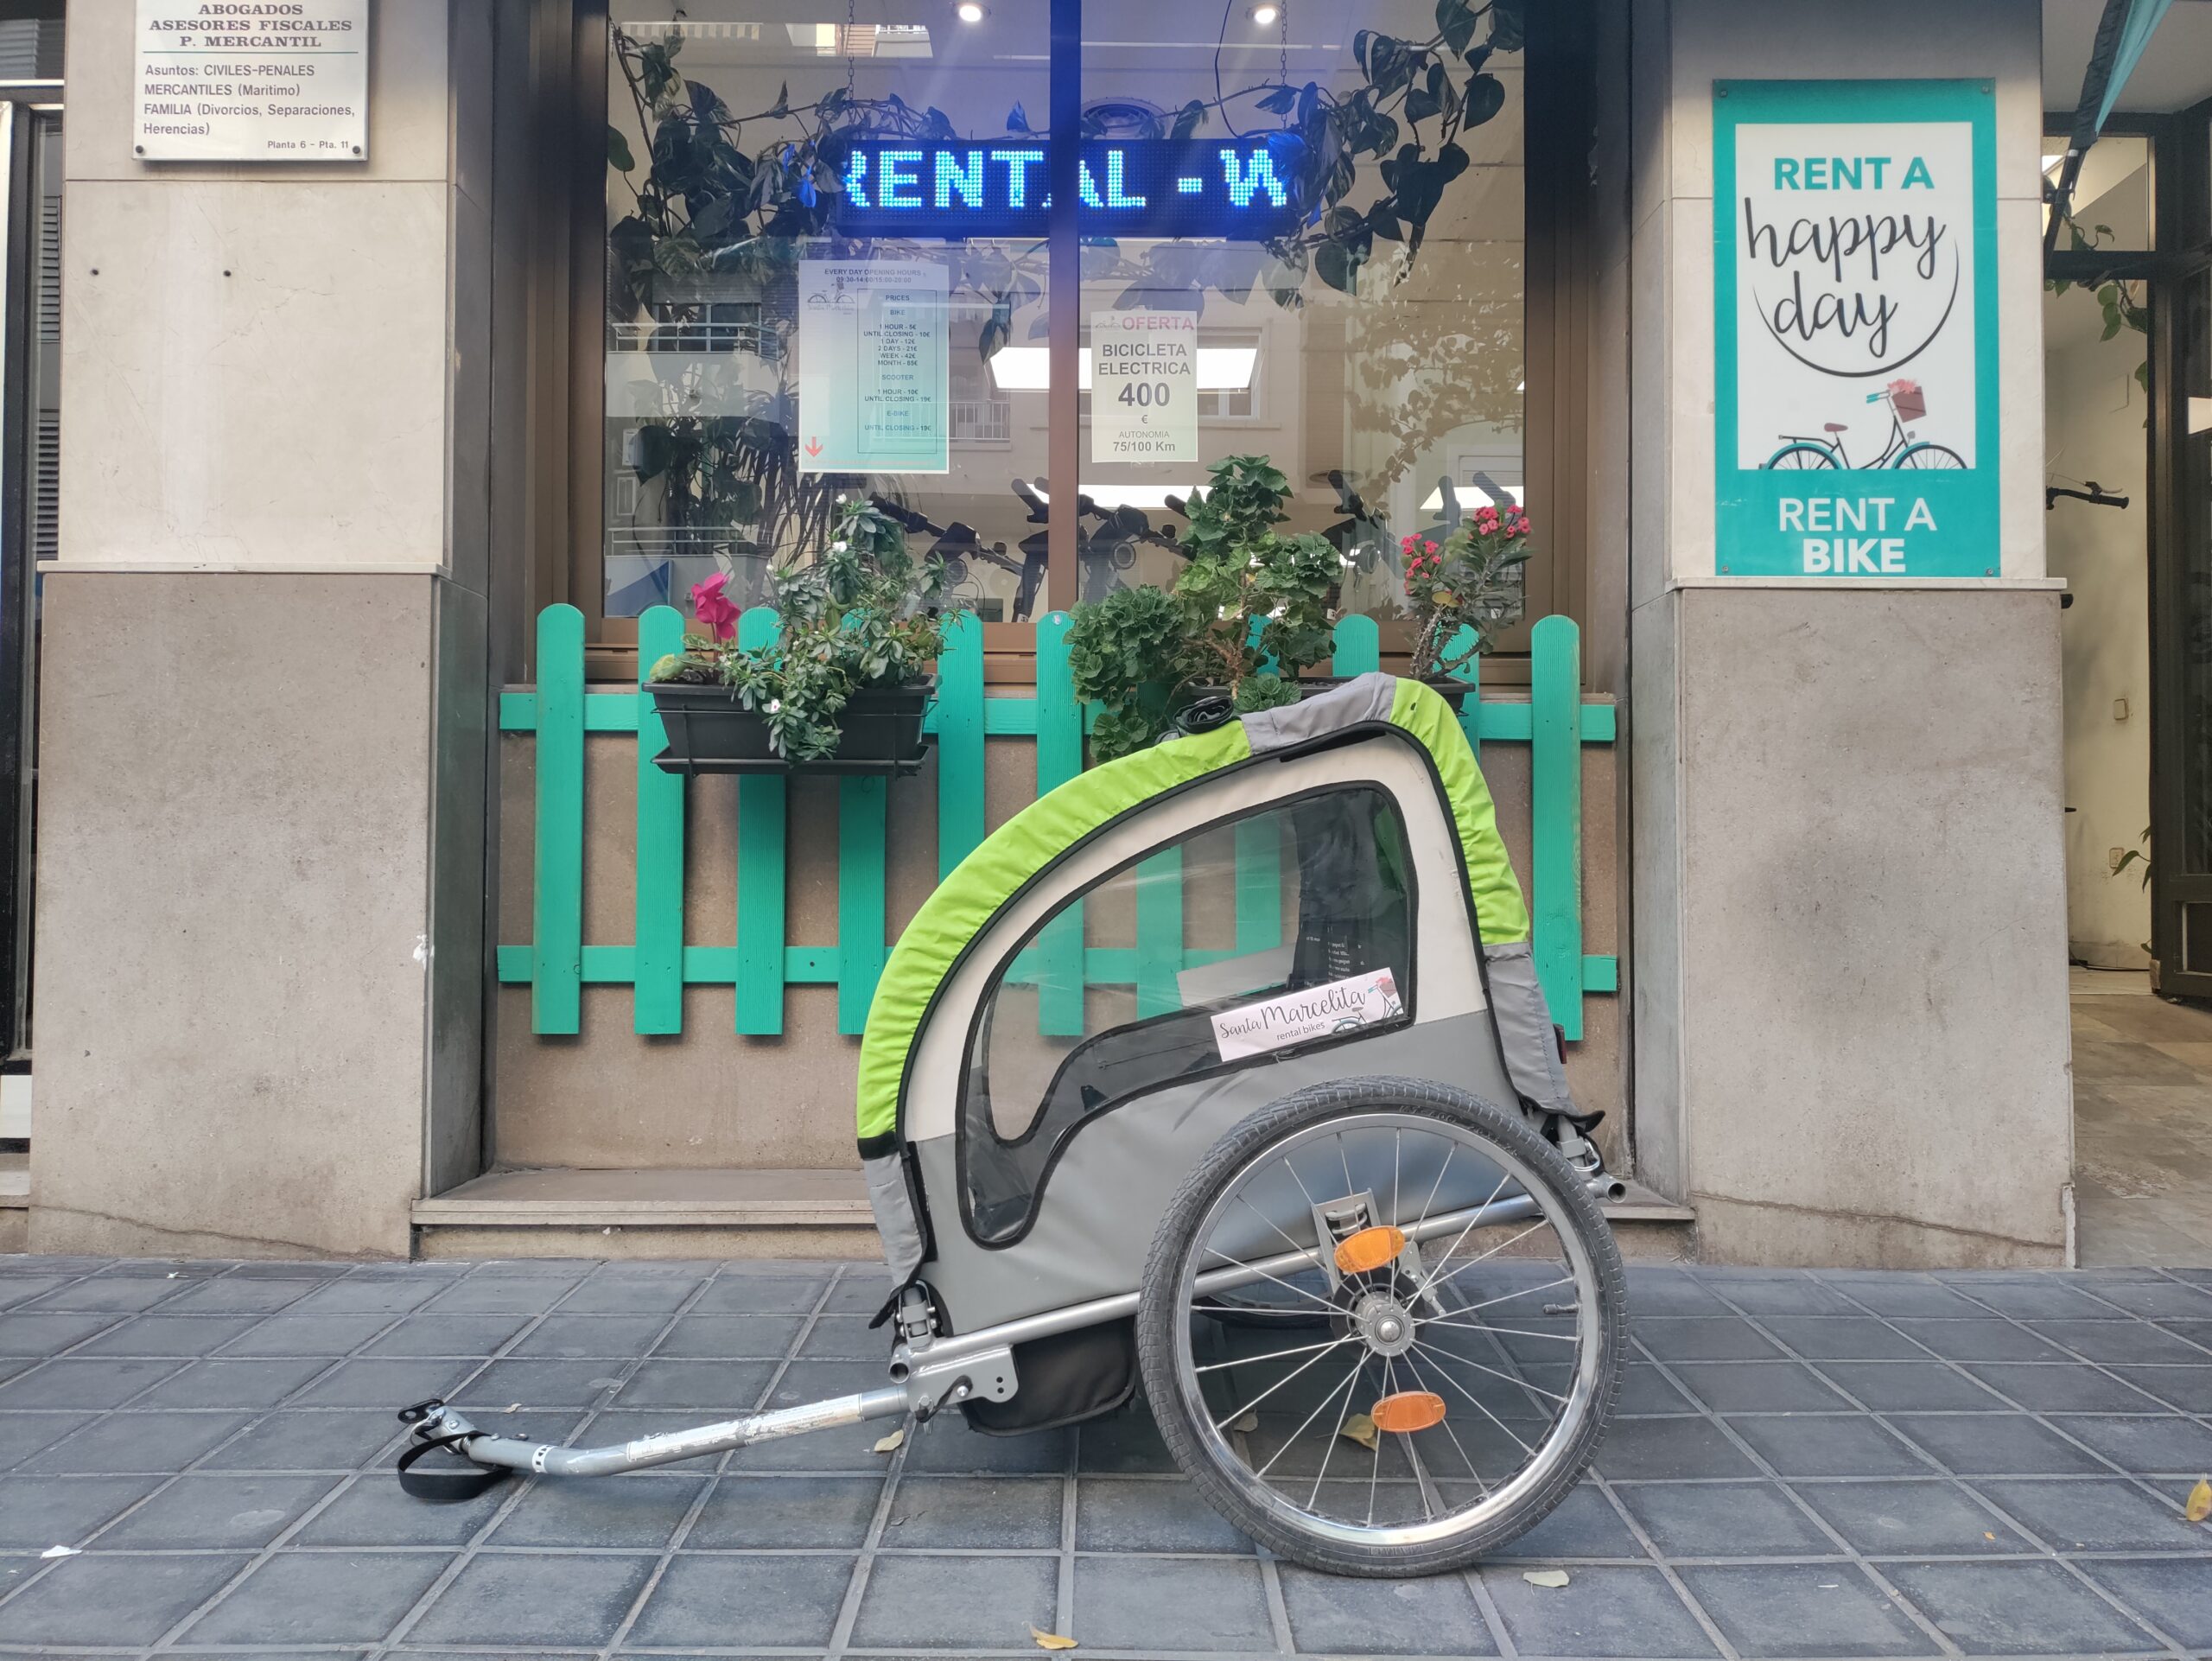 alquiler de bicicletas en valencia - extension para 2 hijos